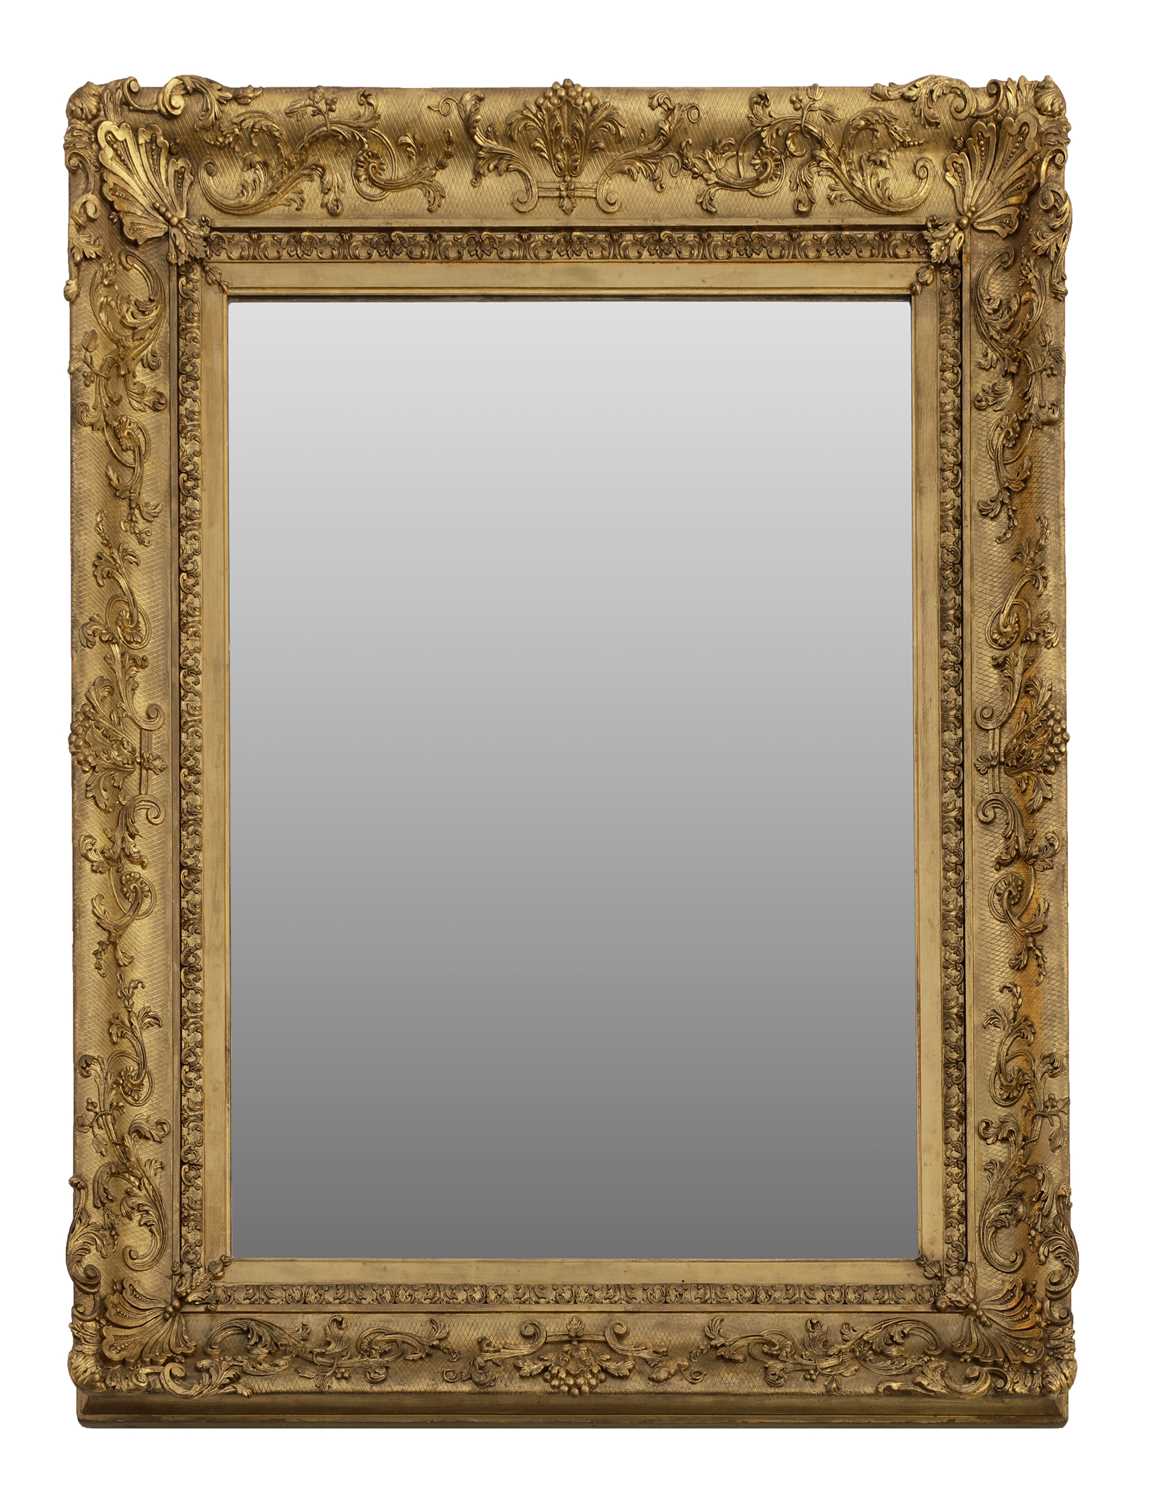 Lot 265 - A rectangular gilt-framed mirror